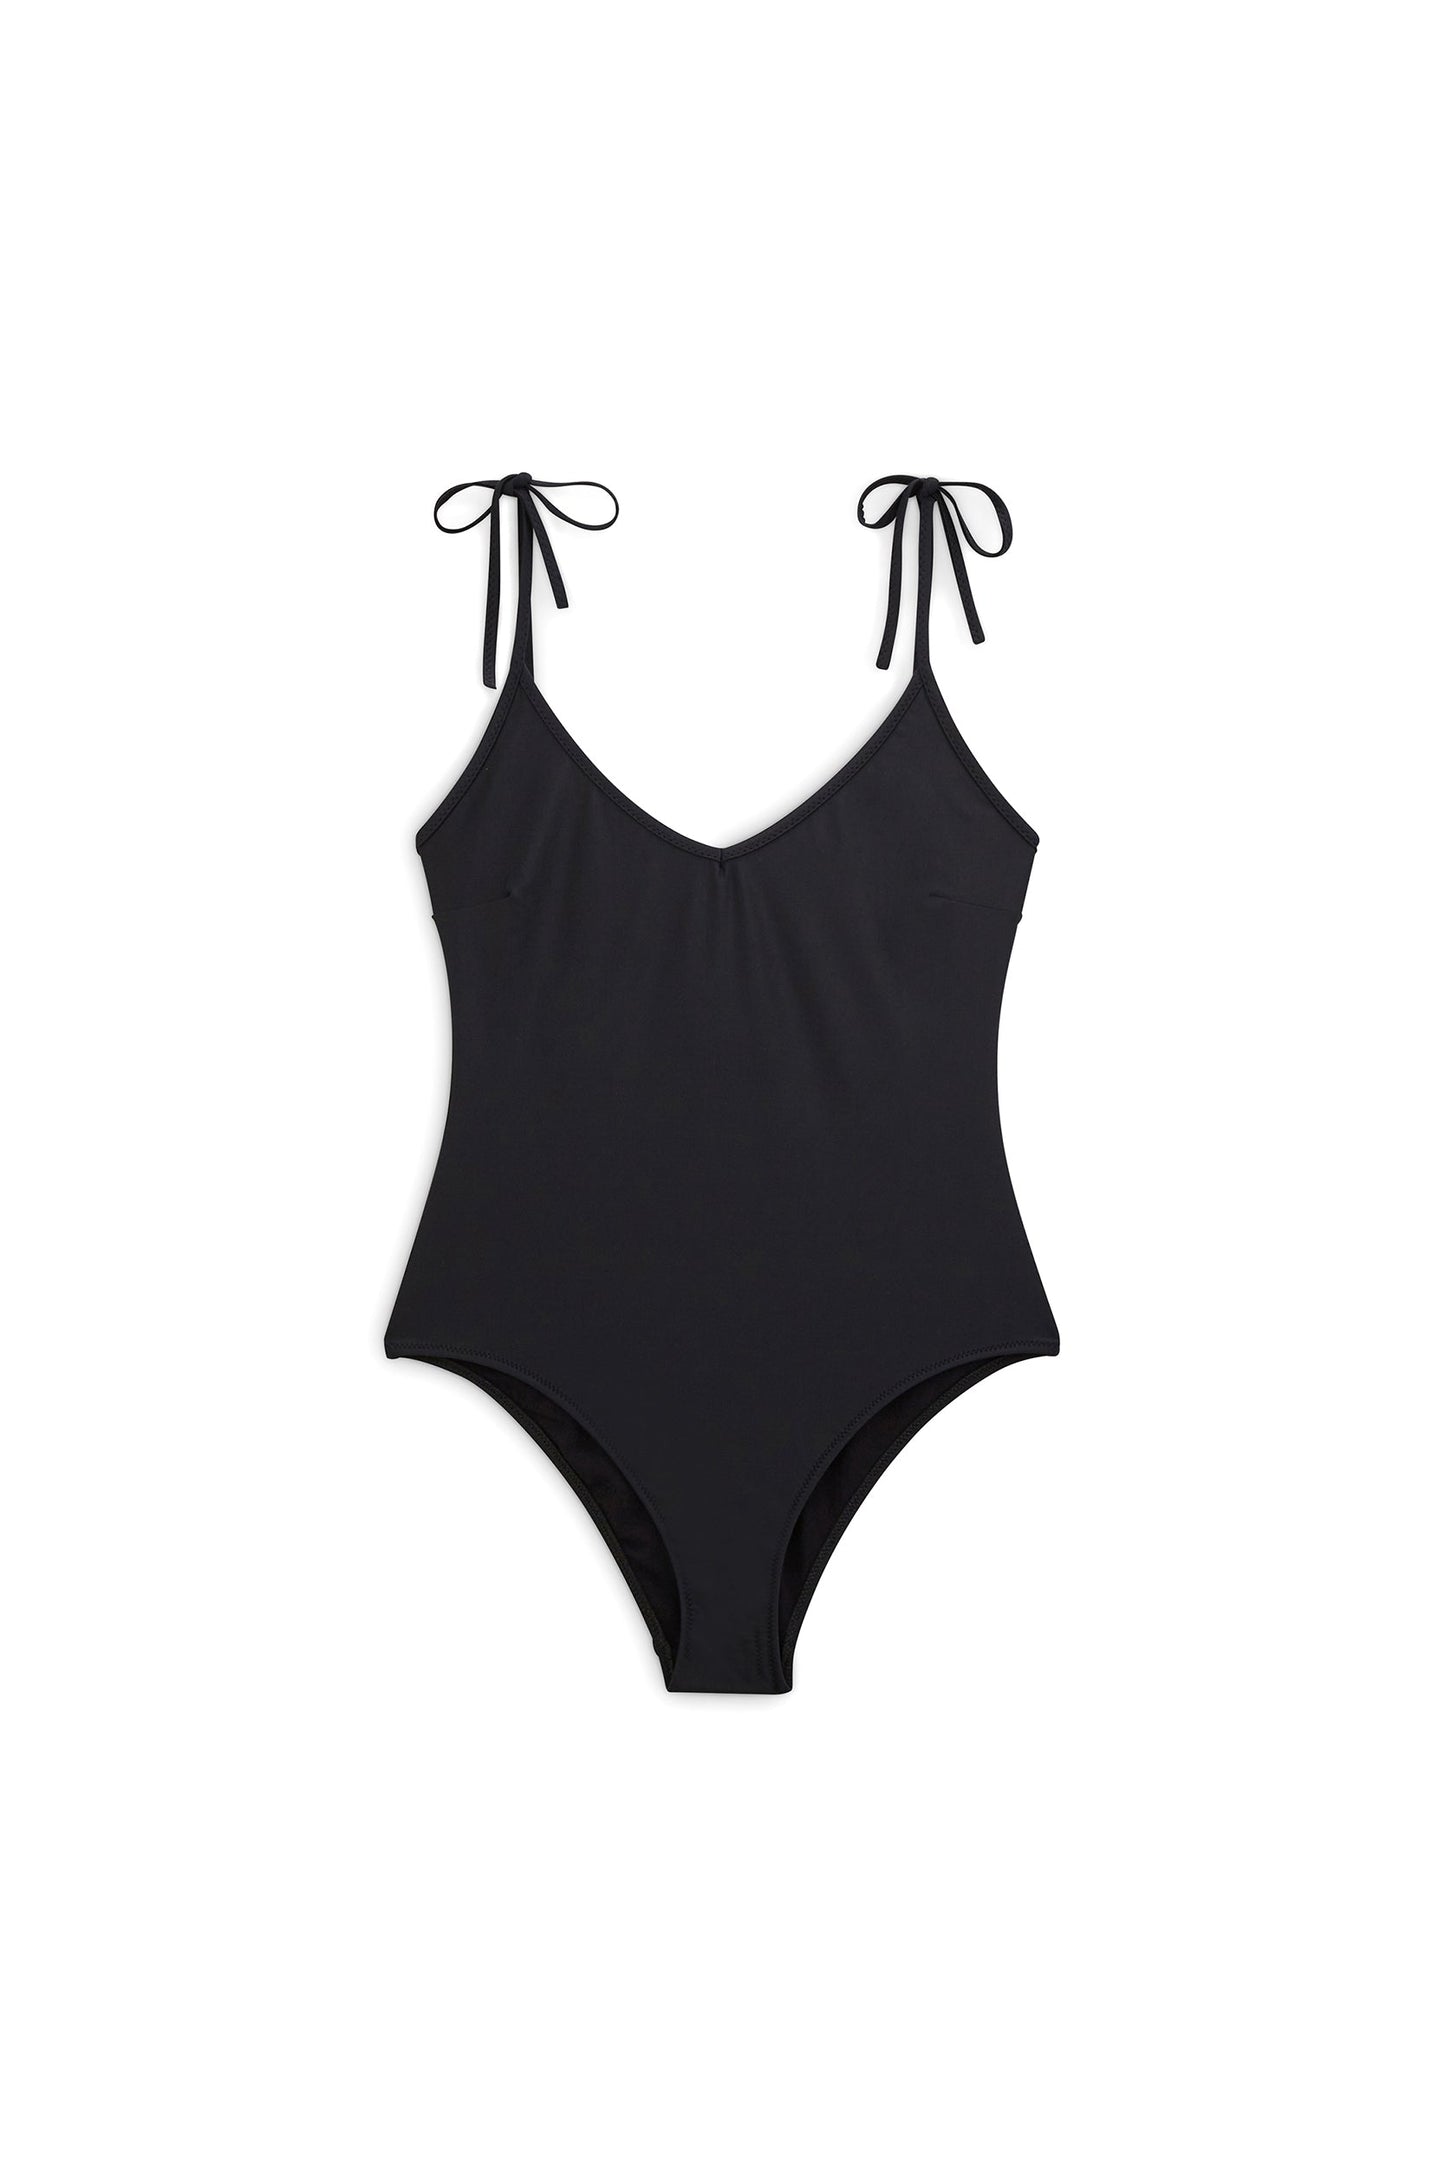 Tilleul black swimsuit